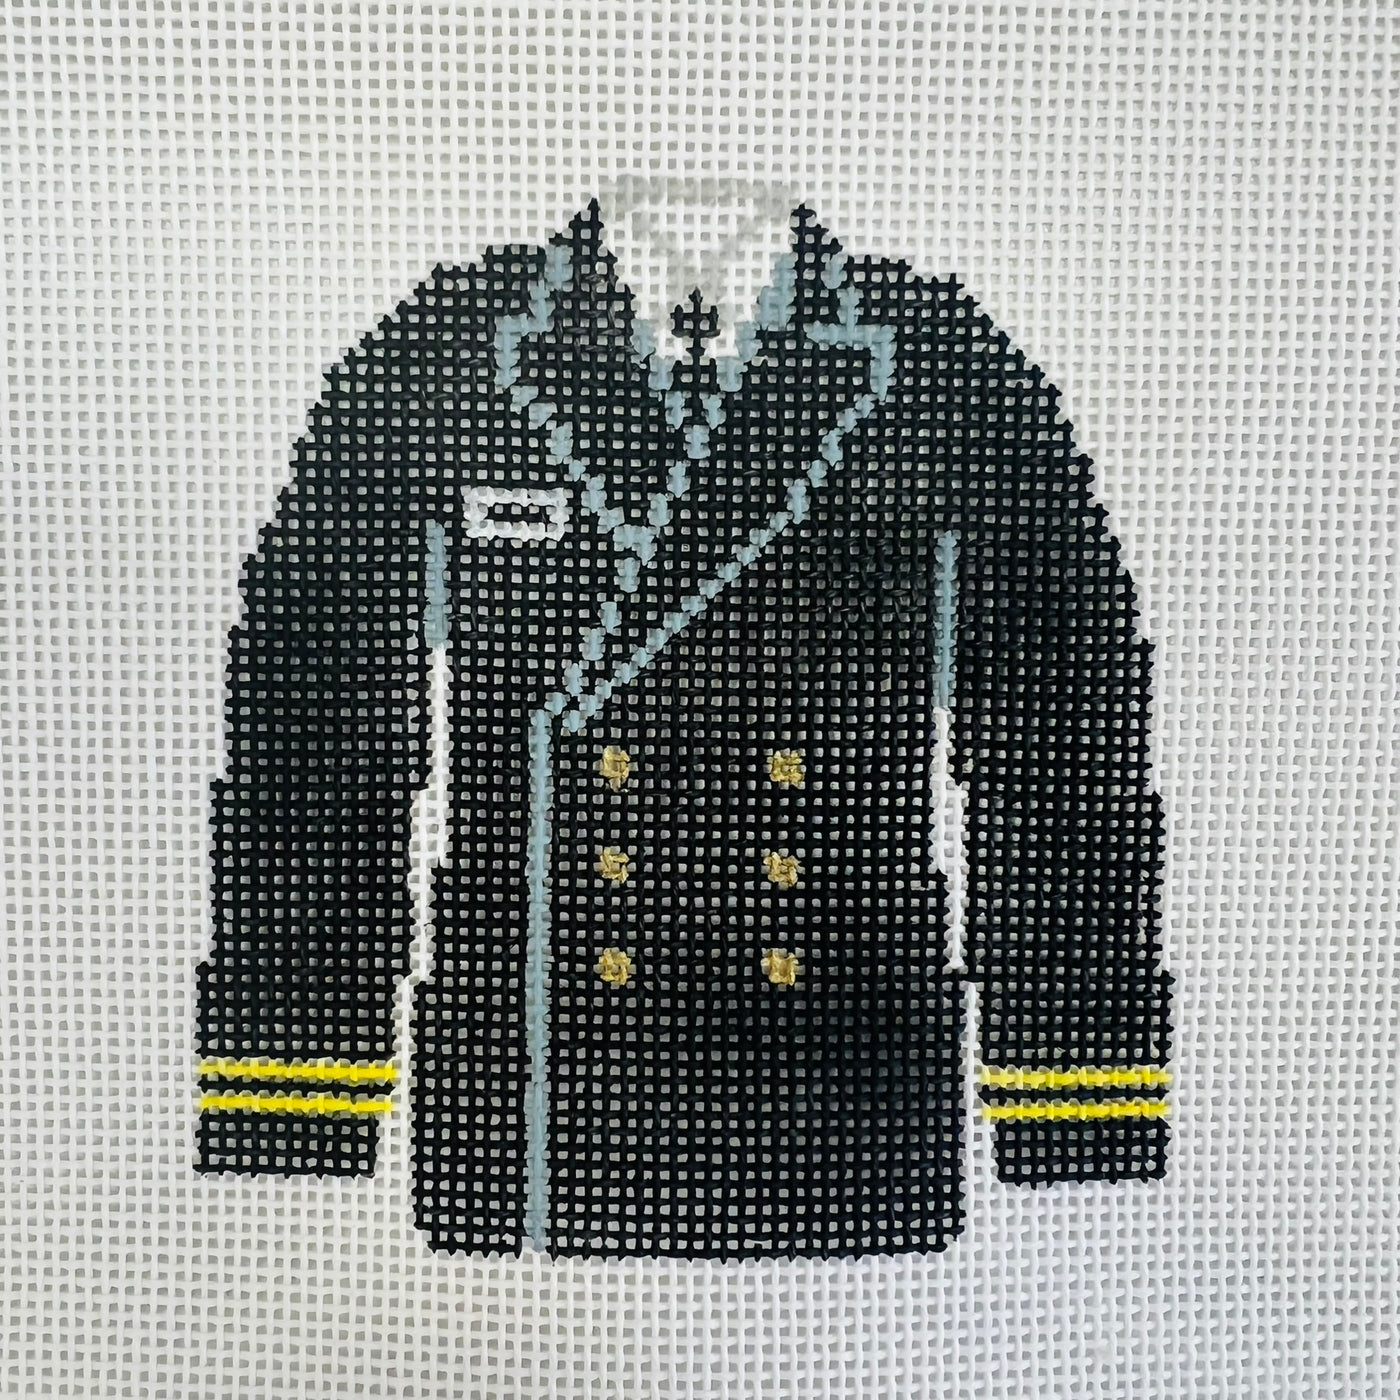 Navy Dress Uniform Ornament Needlepoint Canvas